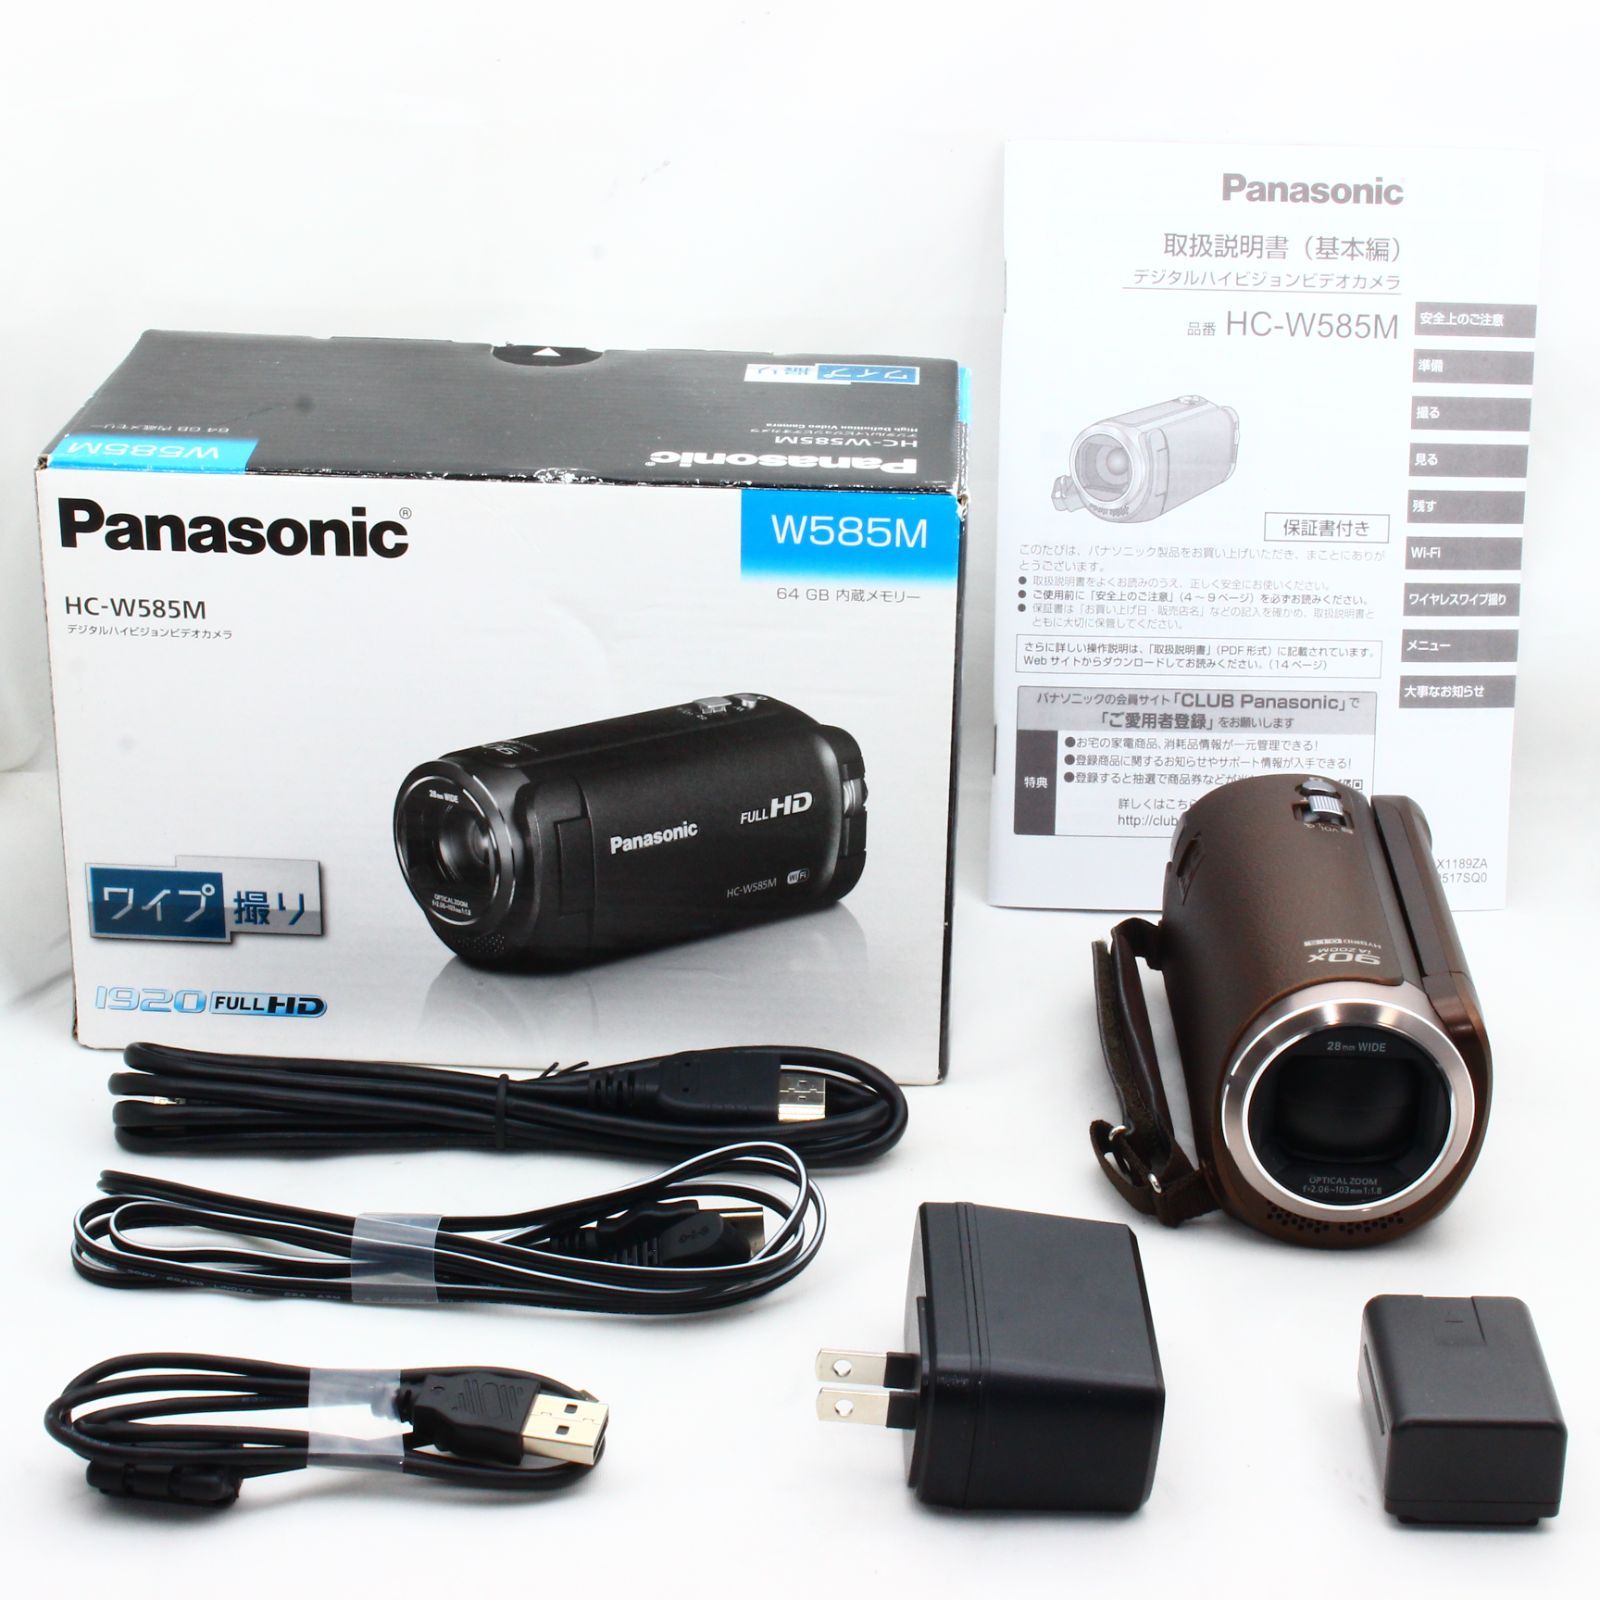 パナソニック HDビデオカメラ W585M 64GB ワイプ撮り 高倍率90倍ズーム